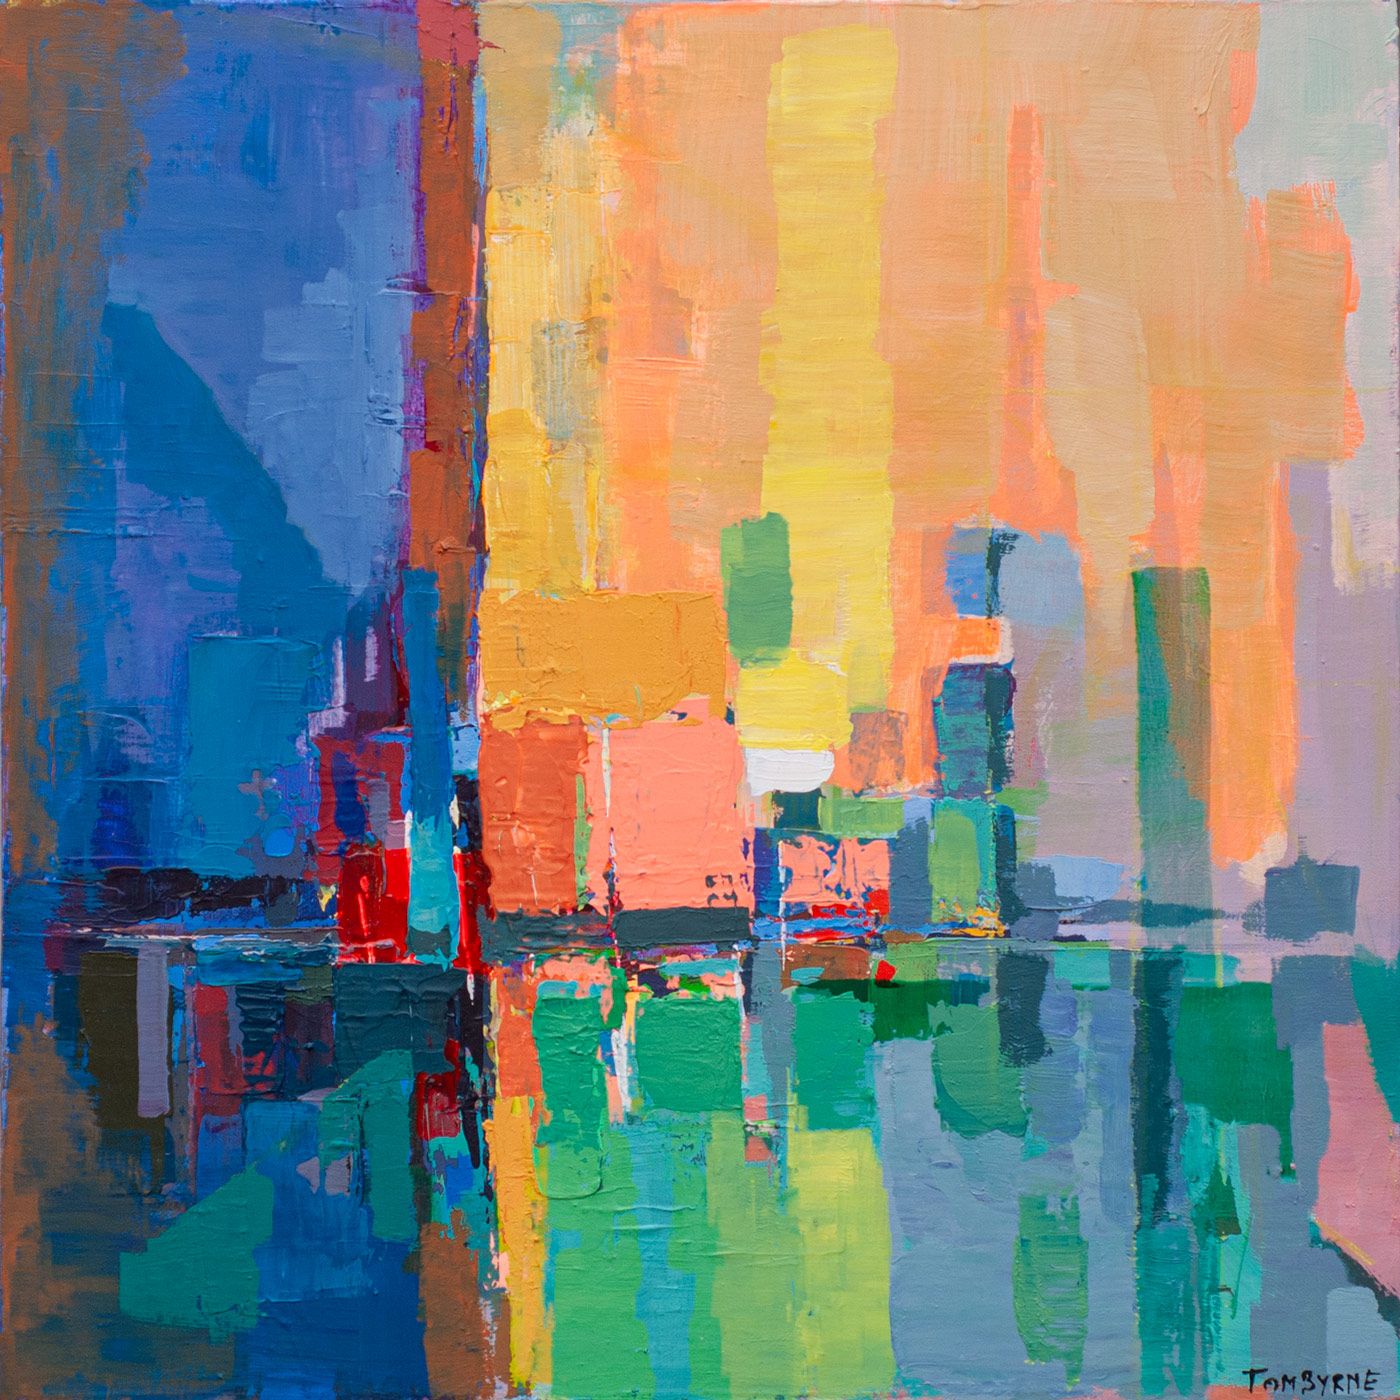 Evening on Spencer Dock by Tom Byrne